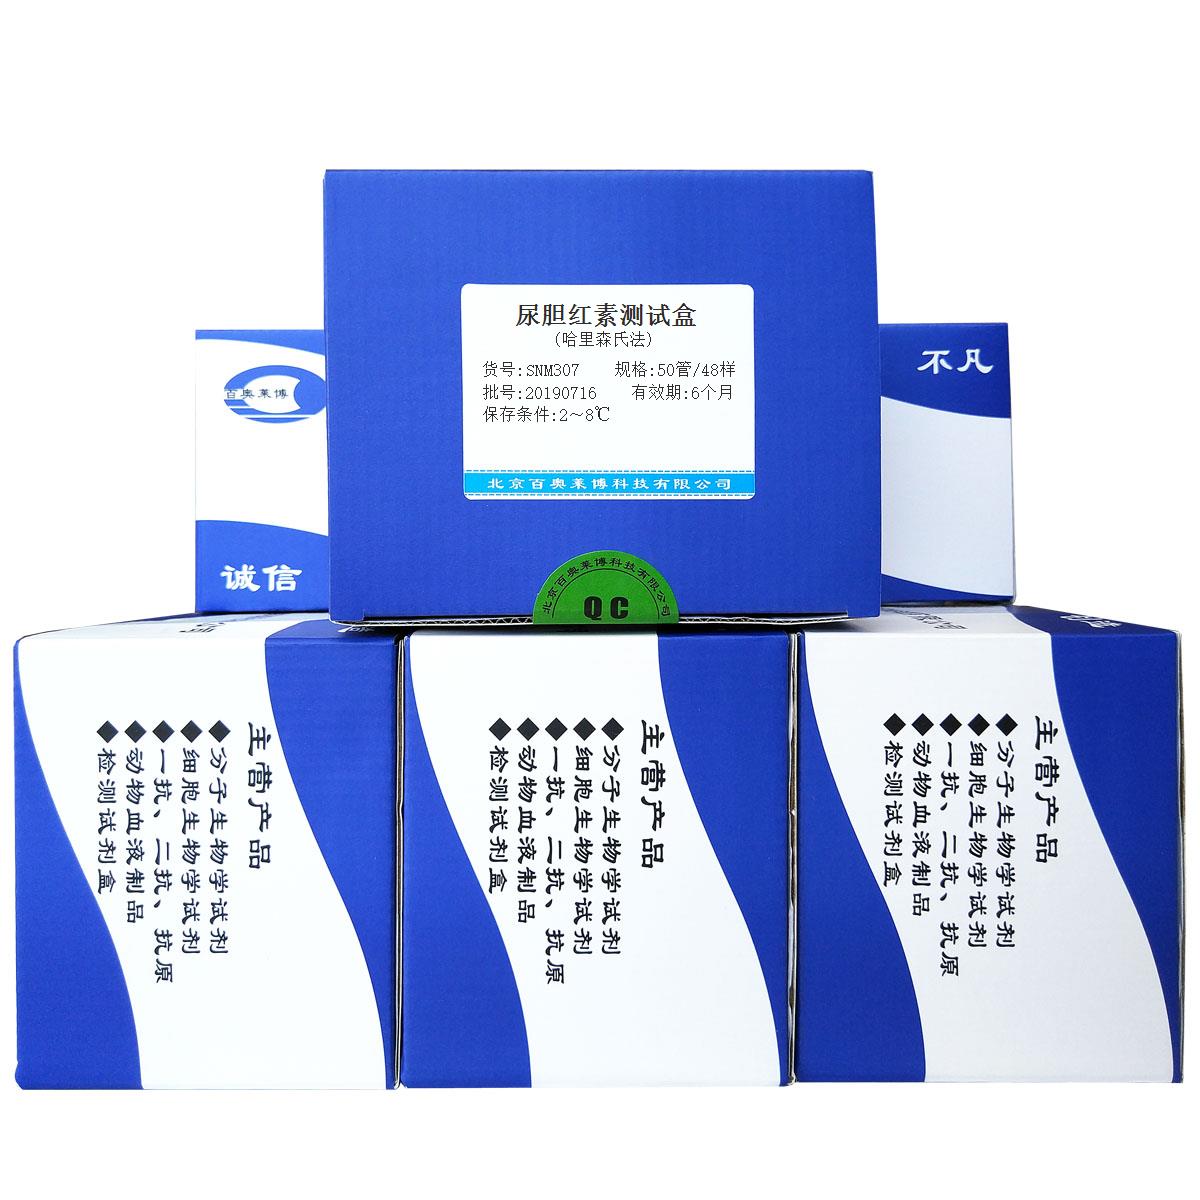 尿胆红素测试盒(哈里森氏法)北京厂家